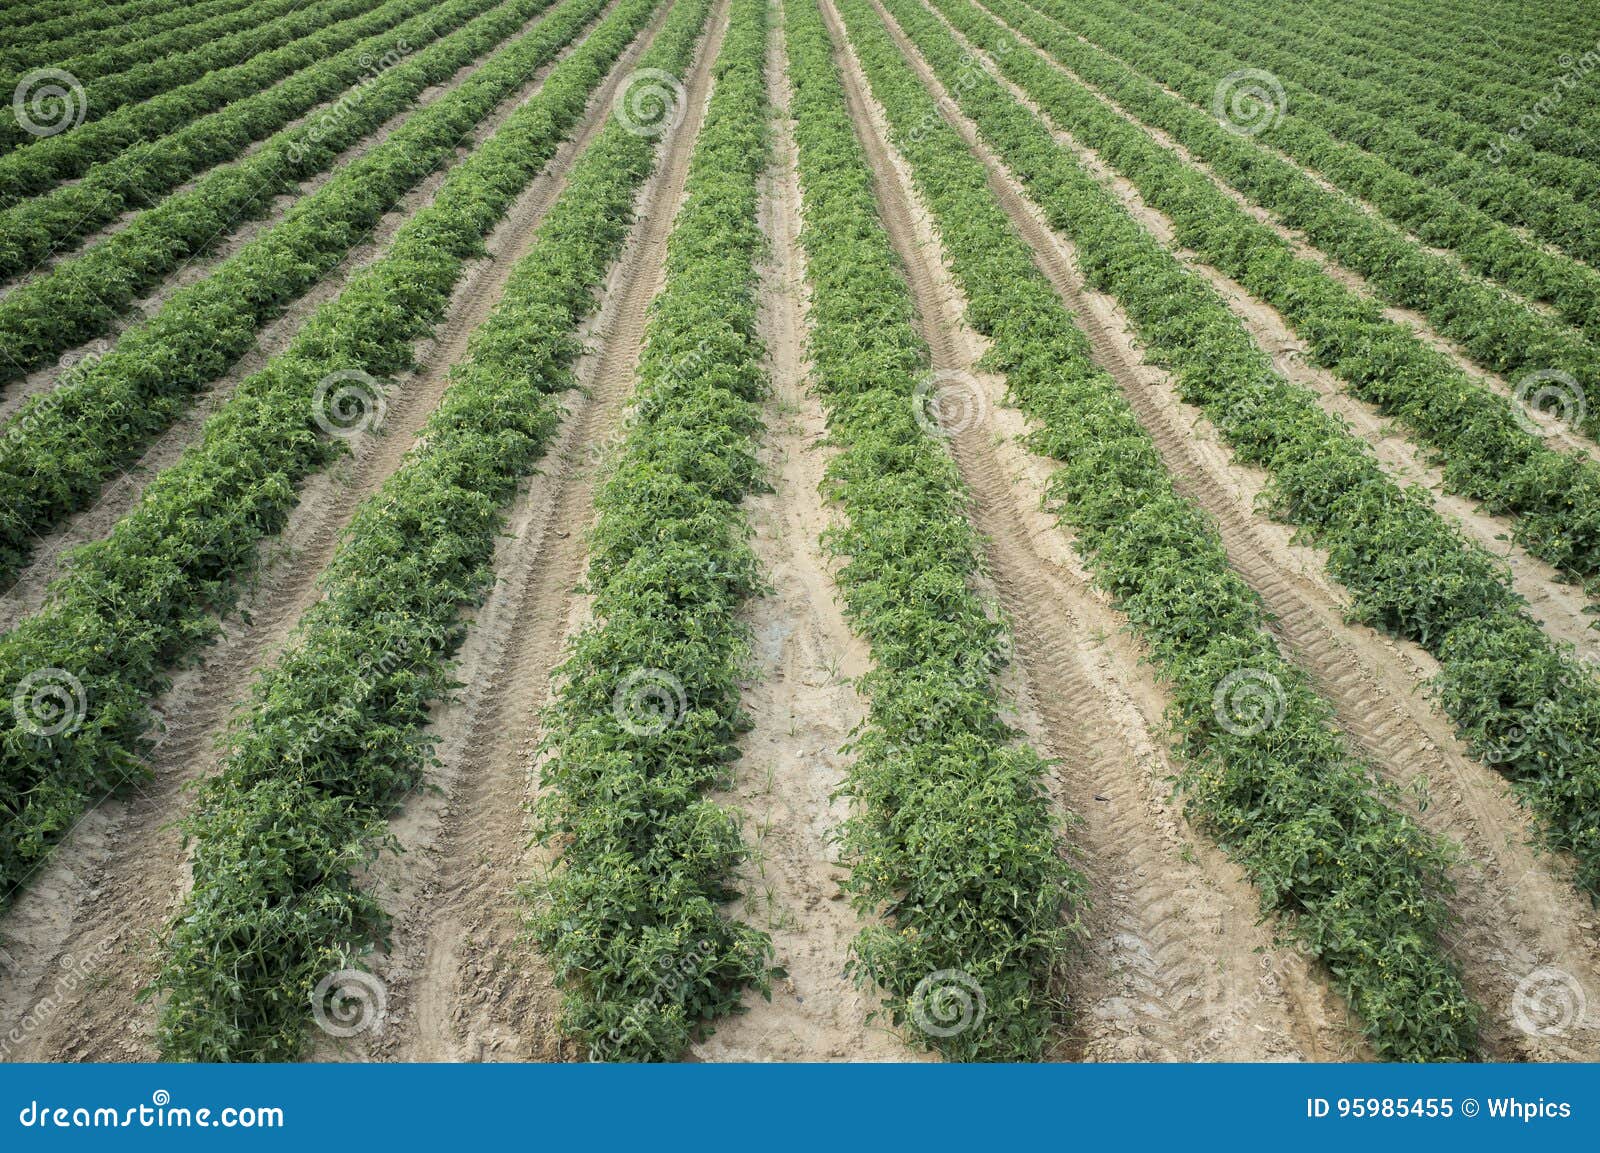 young tomatoes plantation furrows